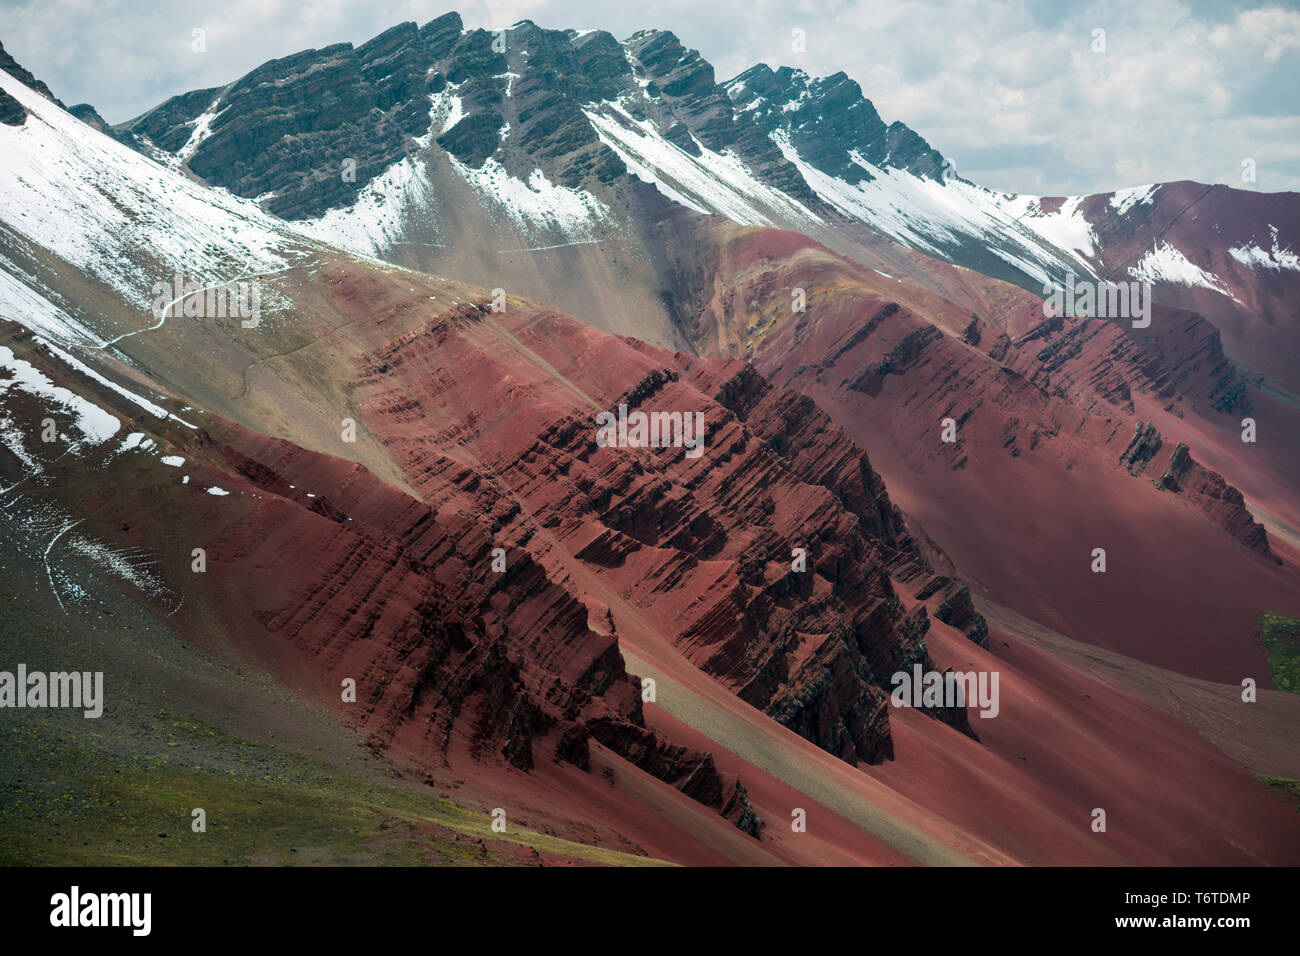 Les crêtes rocheuses et des sommets enneigés des Andes péruviennes en paysage Banque D'Images